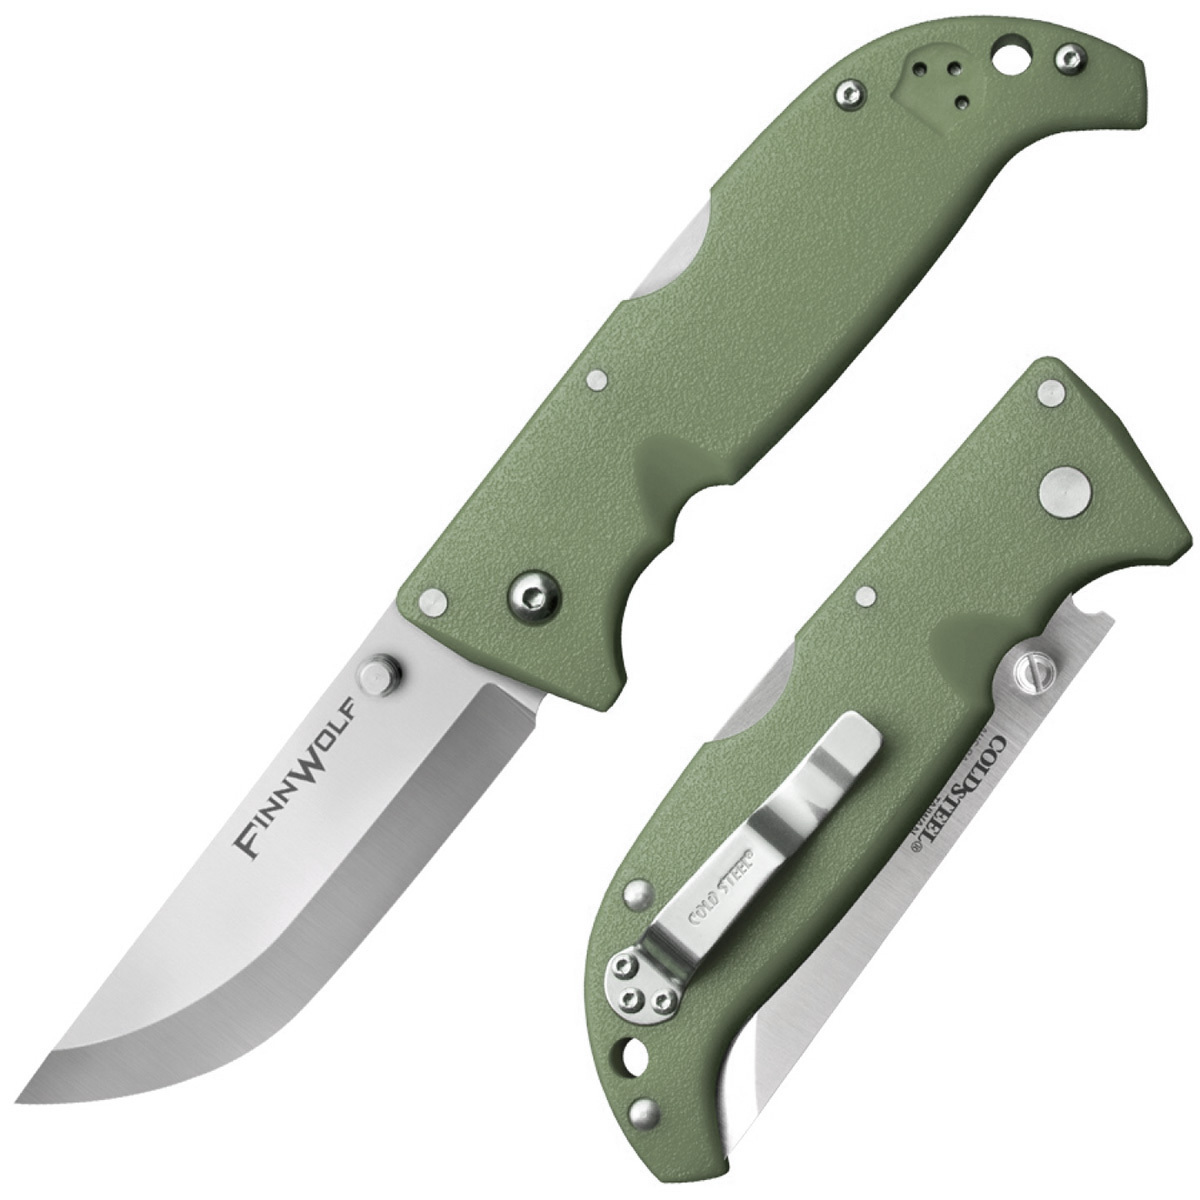 Складной нож Finn Wolf - Cold Steel 20NPFZ, сталь AUS-8A, рукоять Grivory® (высококачественный пластик), Зеленый, блистер складной нож firebird fh41 gb зеленый